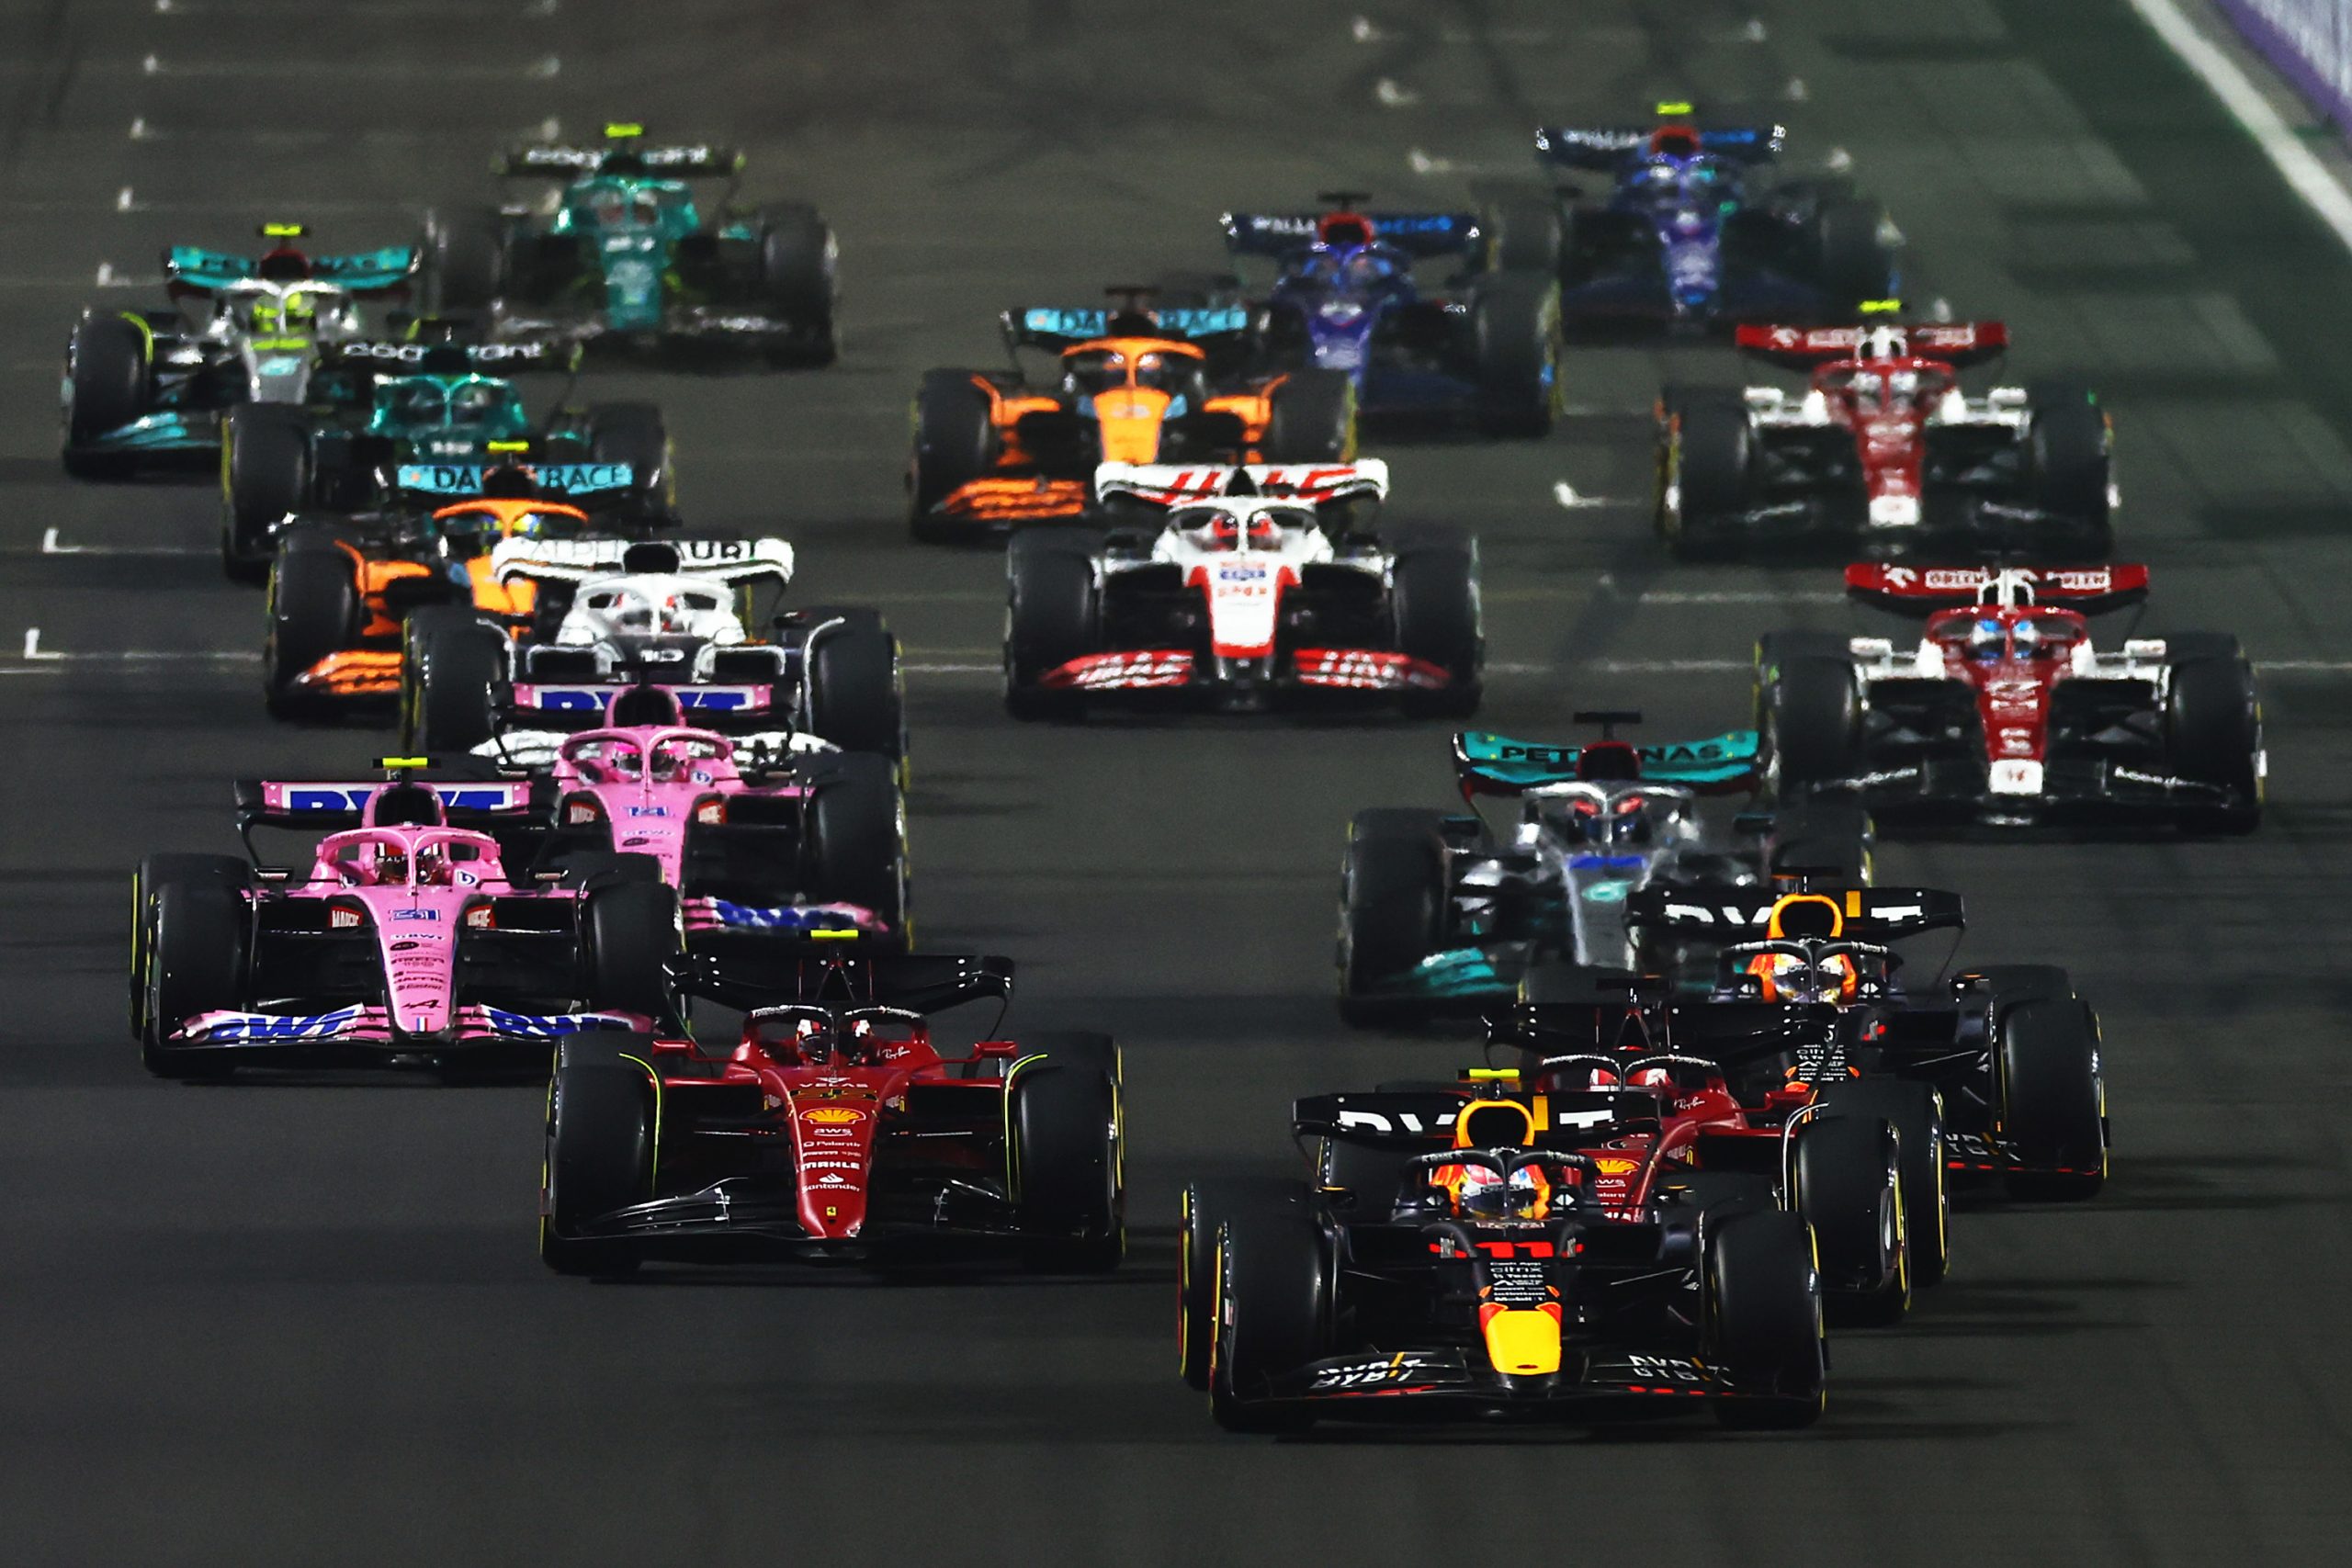 Game da F1 possibilita formato diferente de fim de semana